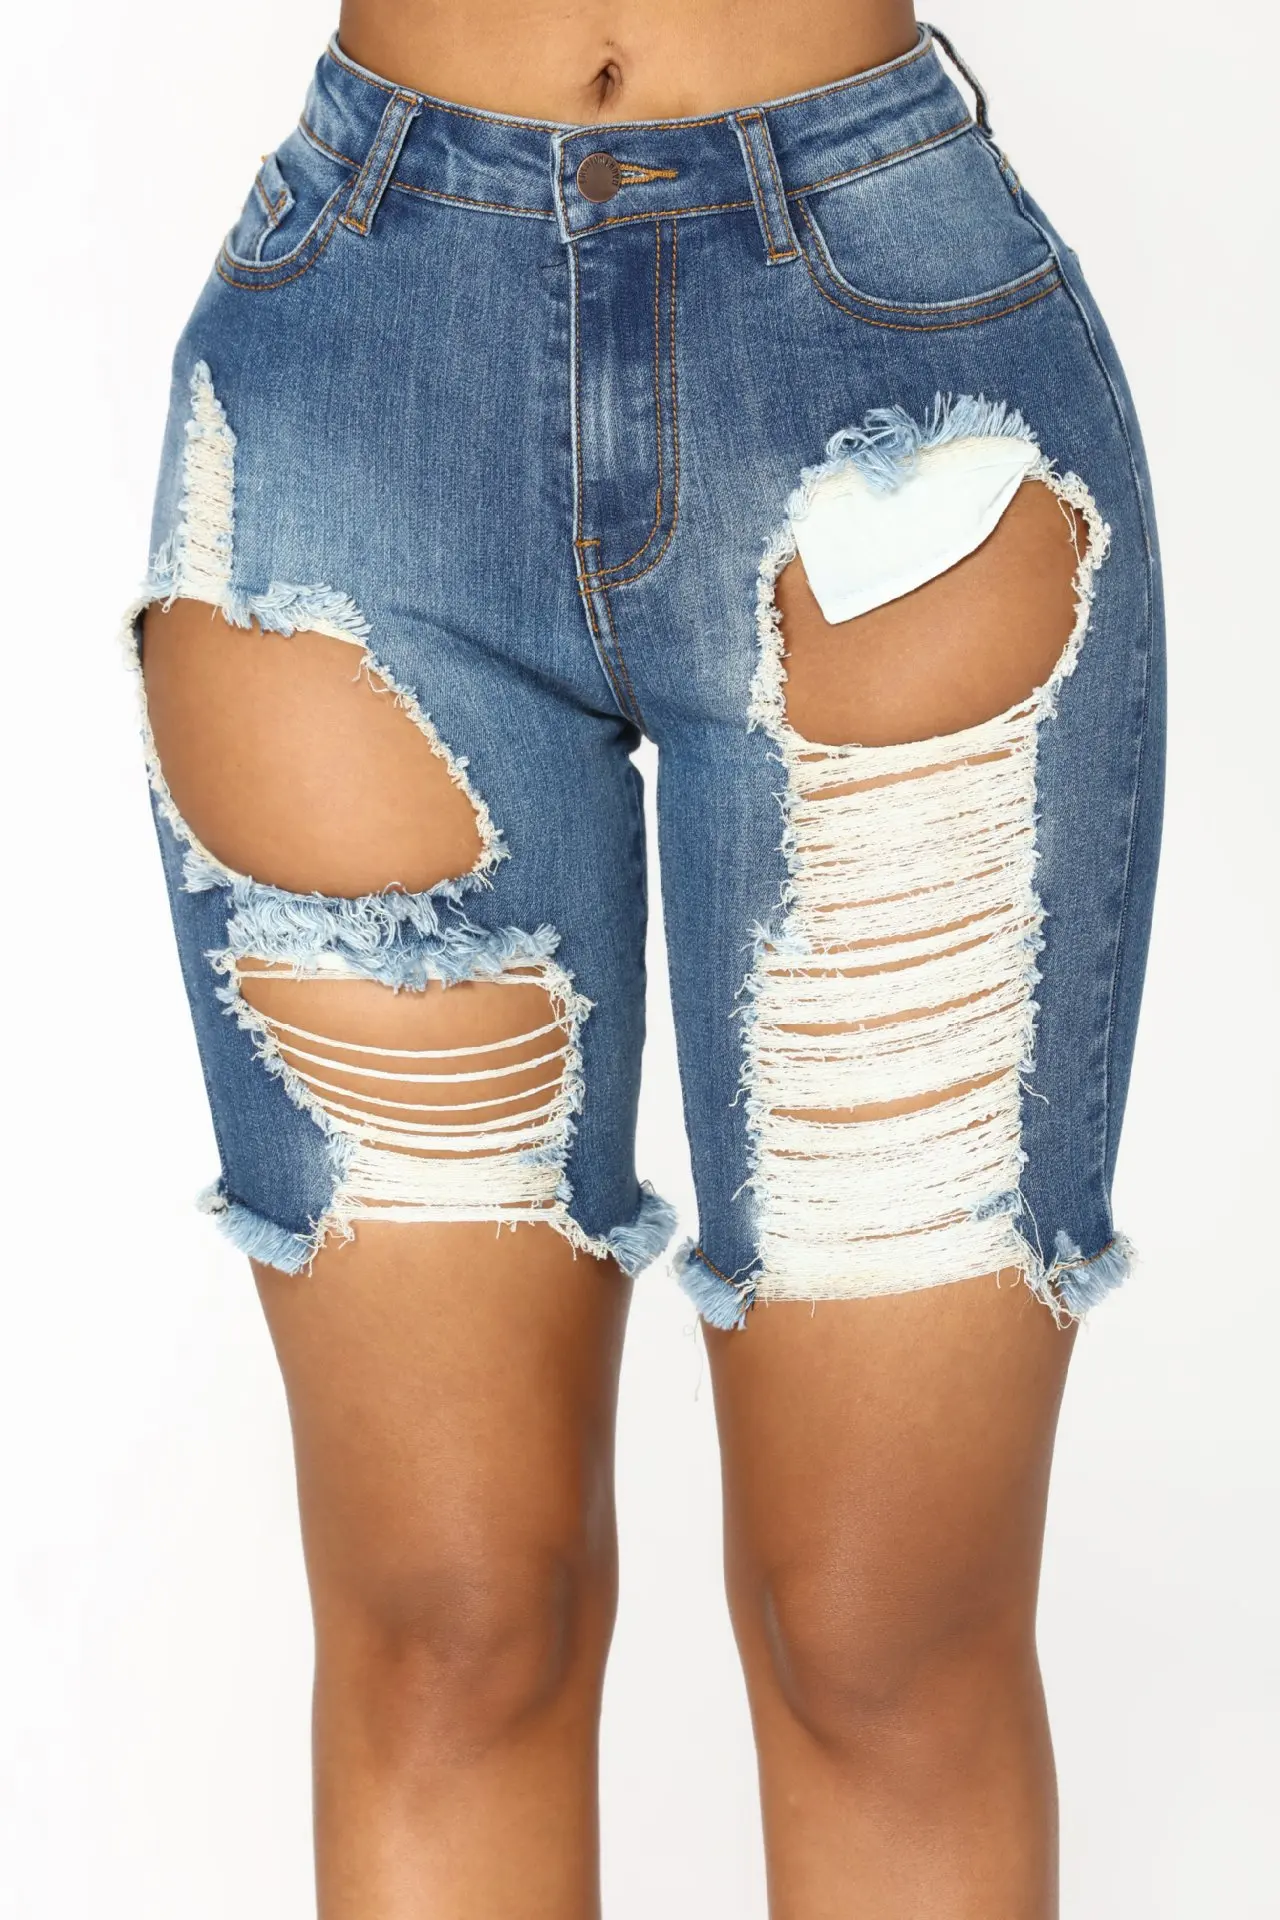 Новые летние рваные джинсы, рваный обтягивающие джинсовые шорты для девочек, рваные, потертые джинсы узкие джинсы больших размеров, джинсы